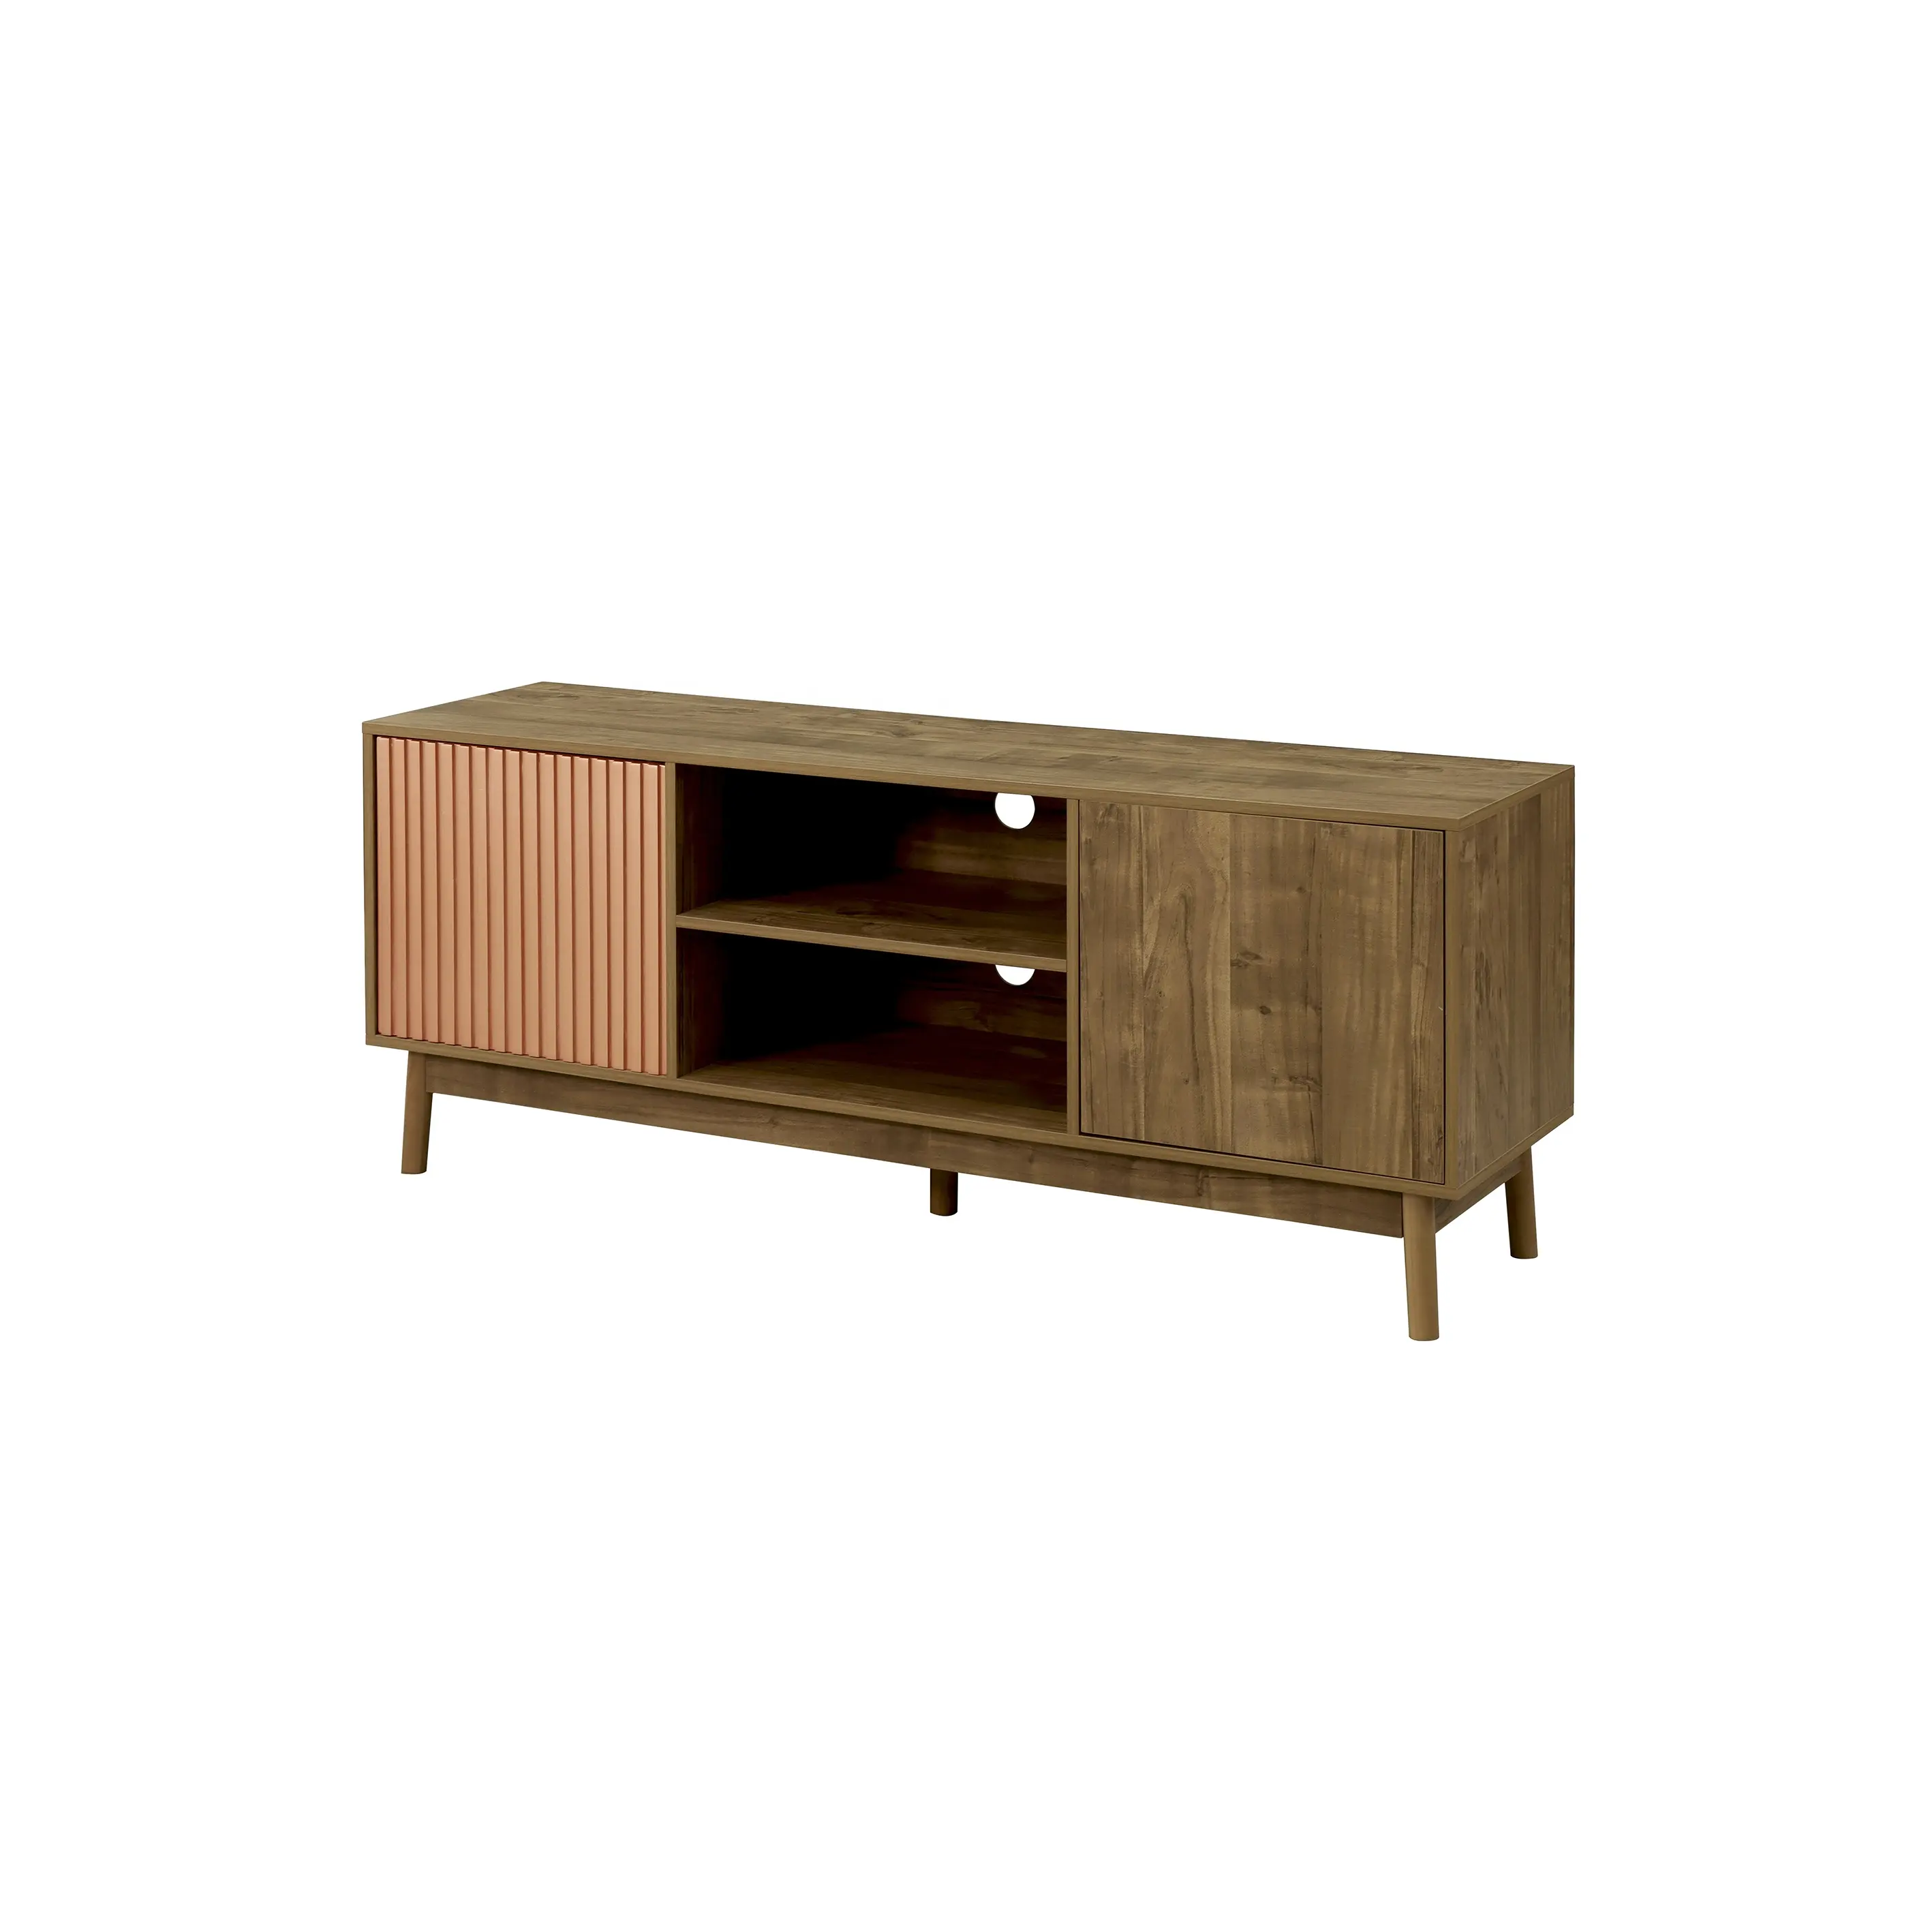 Günstige leichte Mangobohne Holz-Farbe Wohnzimmermöbel Luxus Holz moderne Fernsehtische